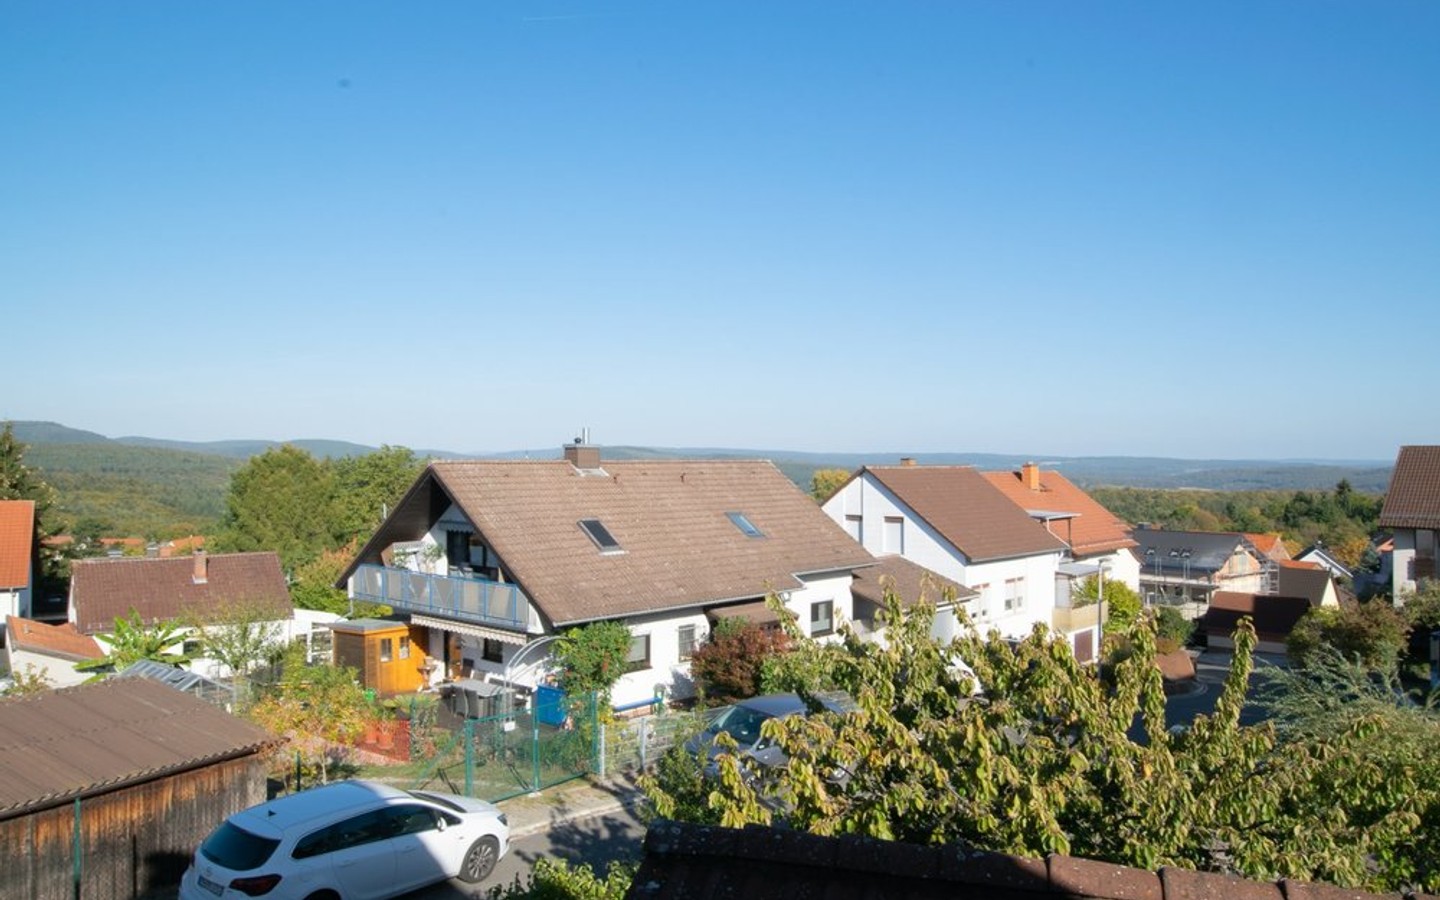 Tolle Sicht vom Balkon - Großzügige Doppelhaushälfte mit viel Potenzial in ruhiger Aussichtslage von Gaiberg